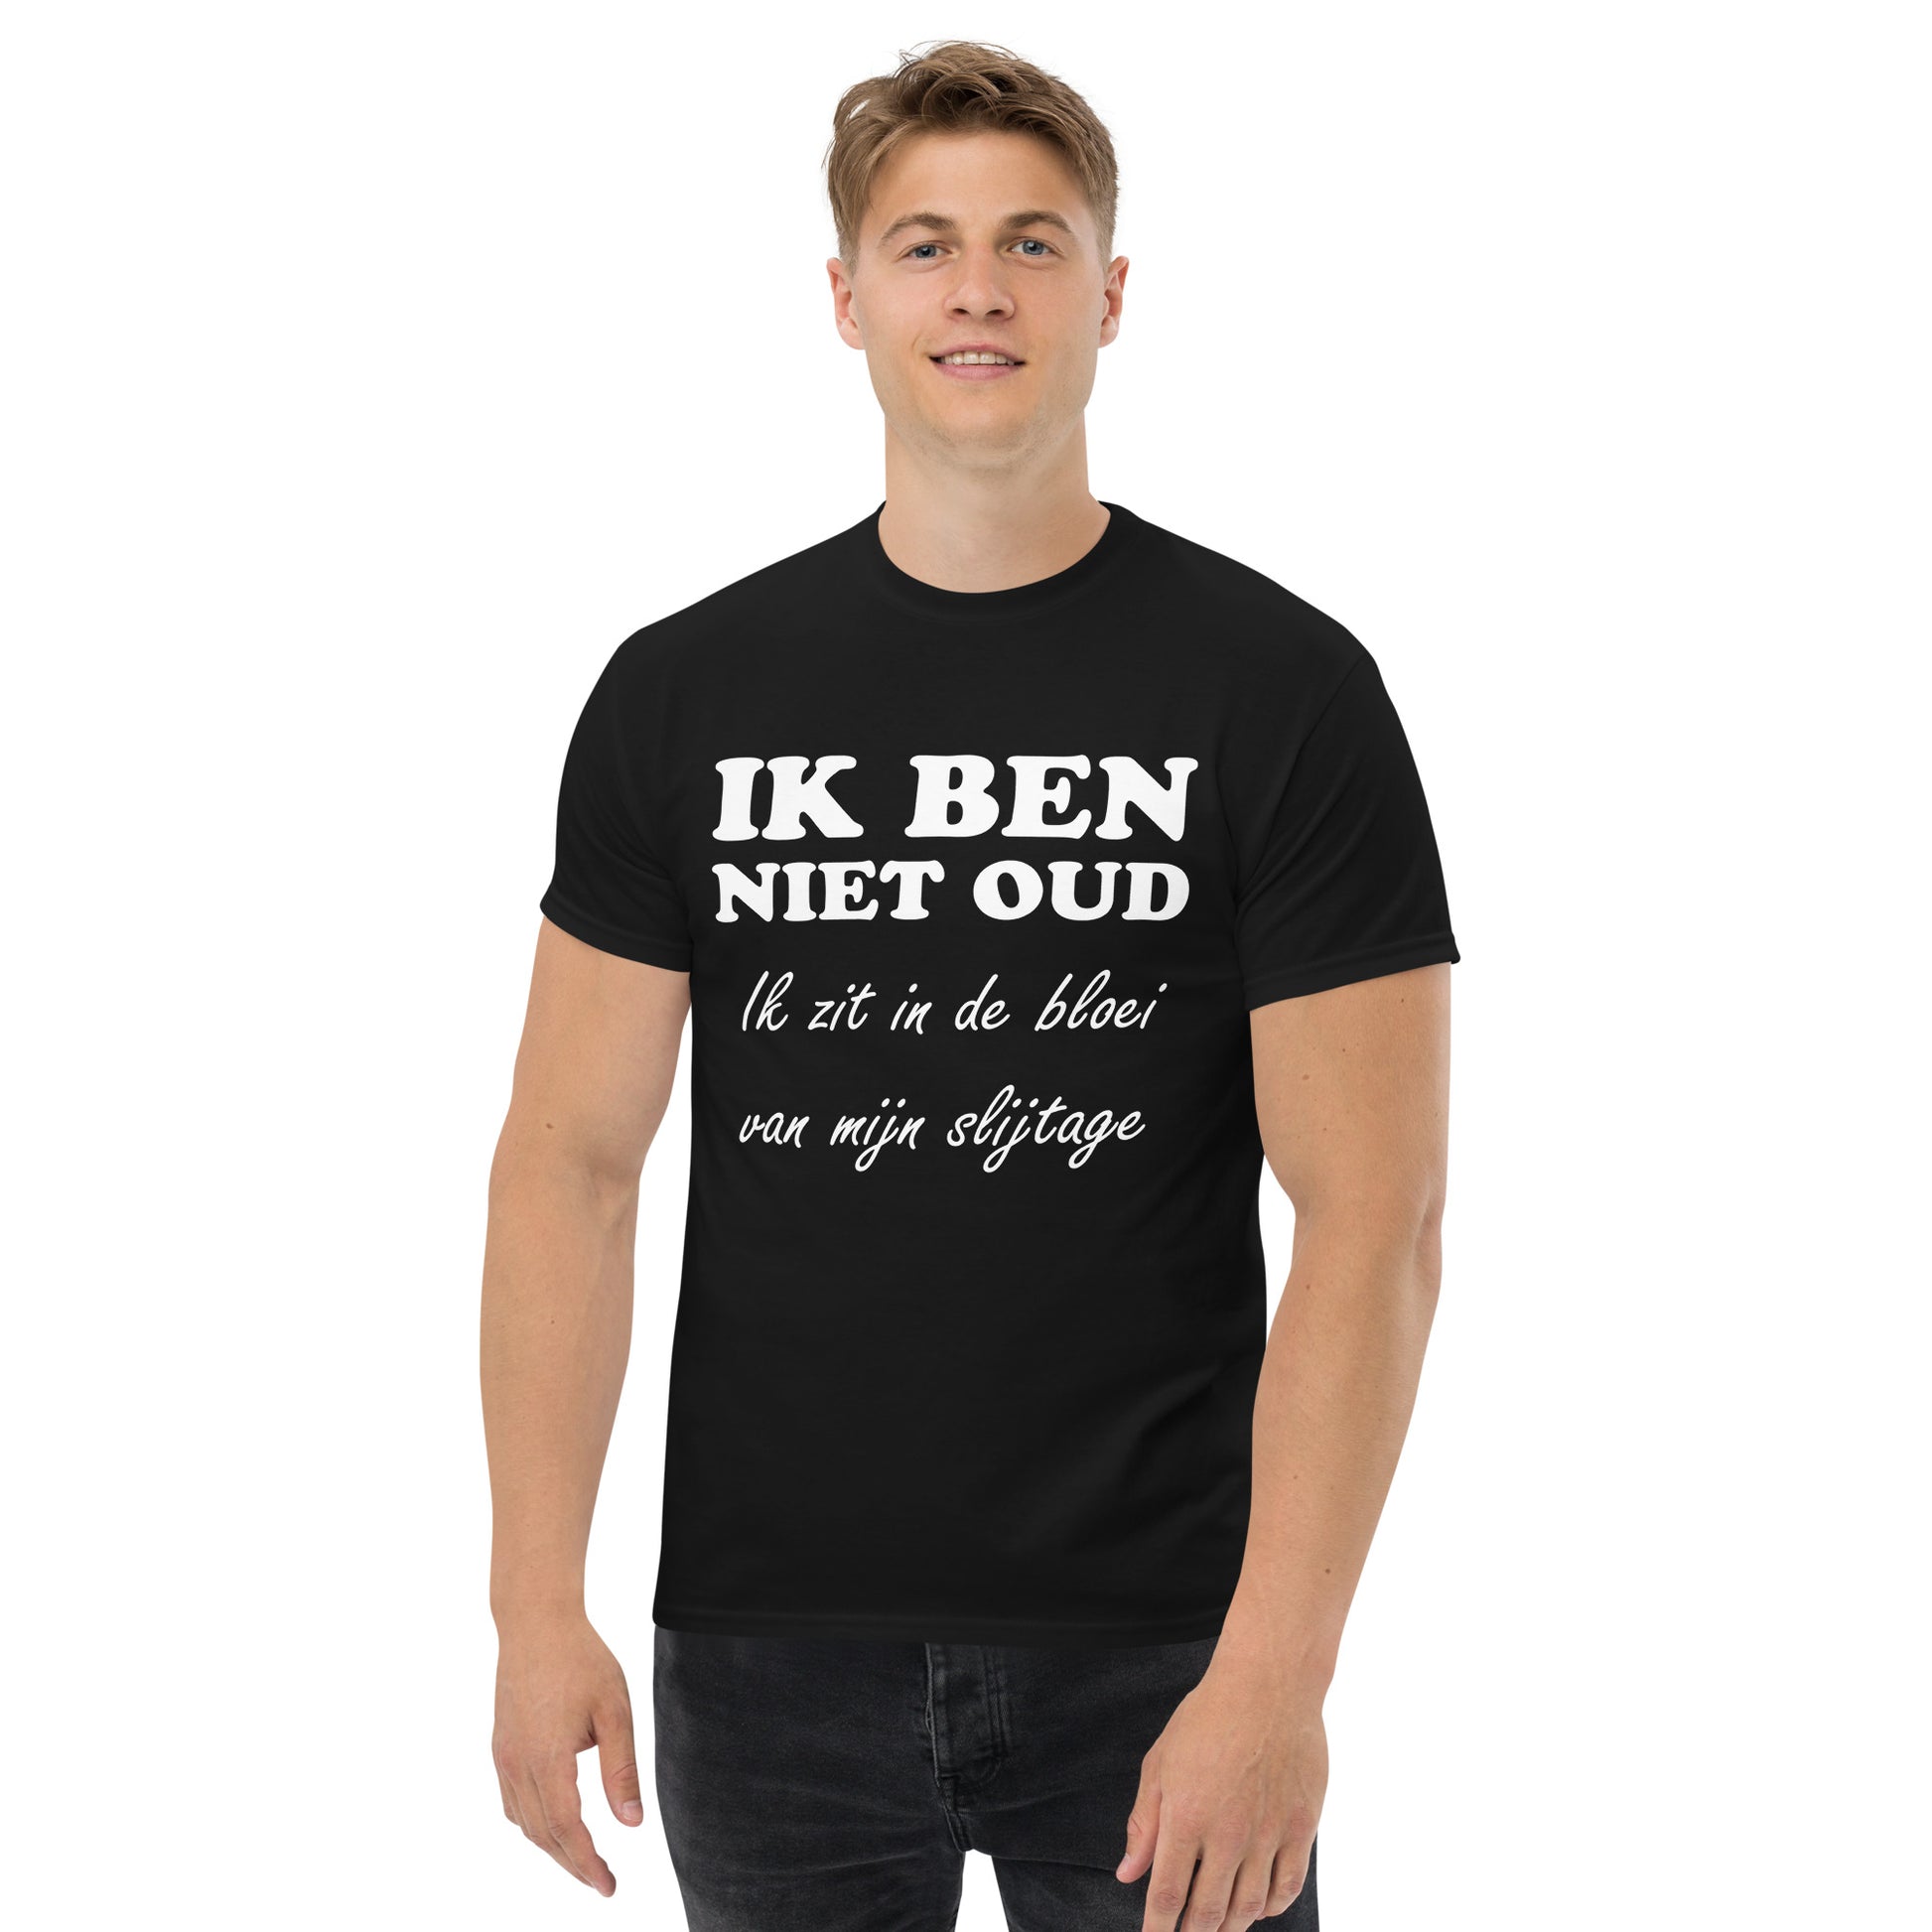 Black T-shirt with the text "IK BEN NIET OUD ik zit in de bloei van mijn slijtage"